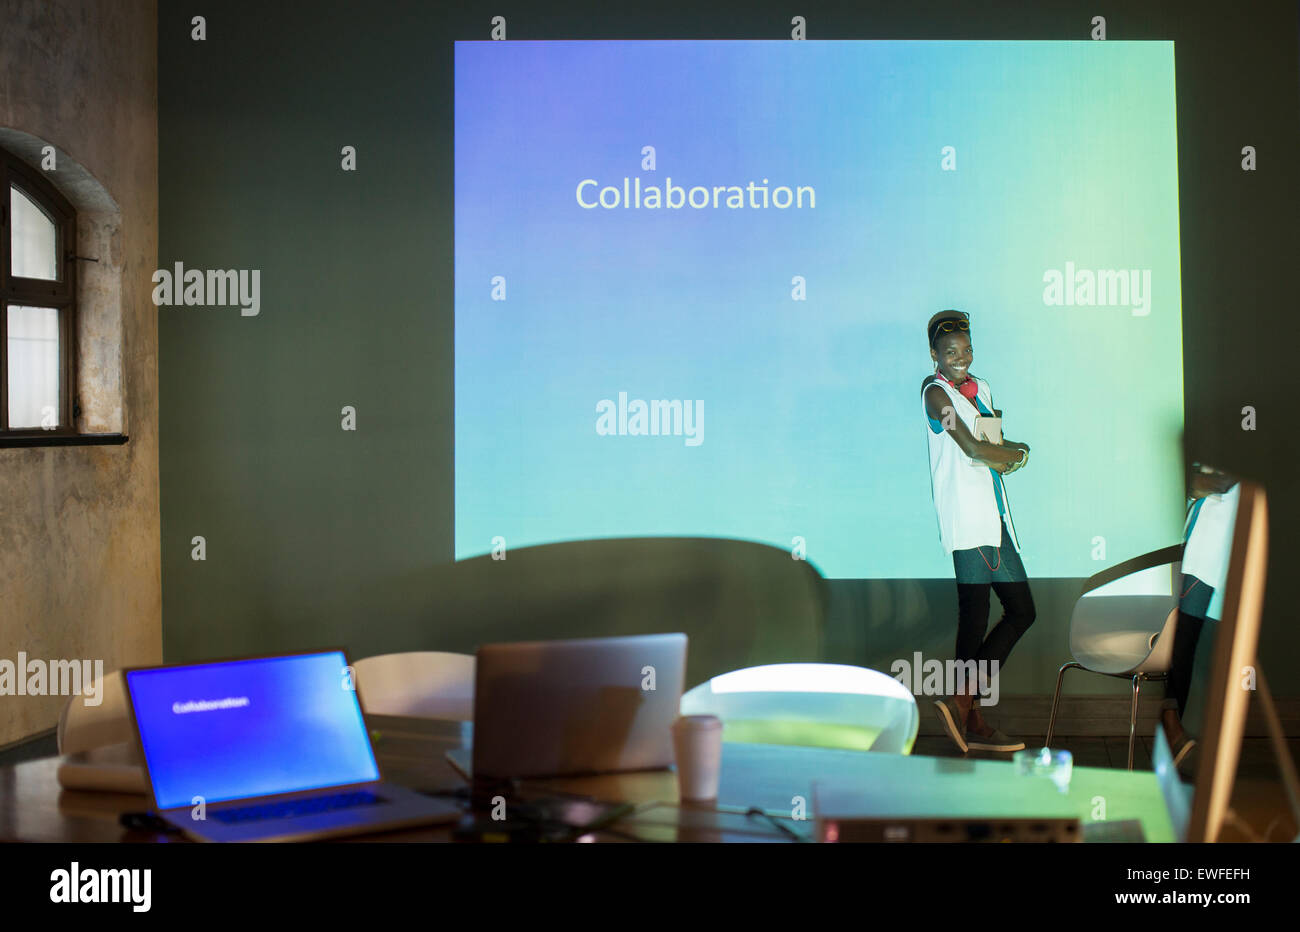 La gente di affari preparazione presentazione audio visiva sulla collaborazione in sala conferenze Foto Stock